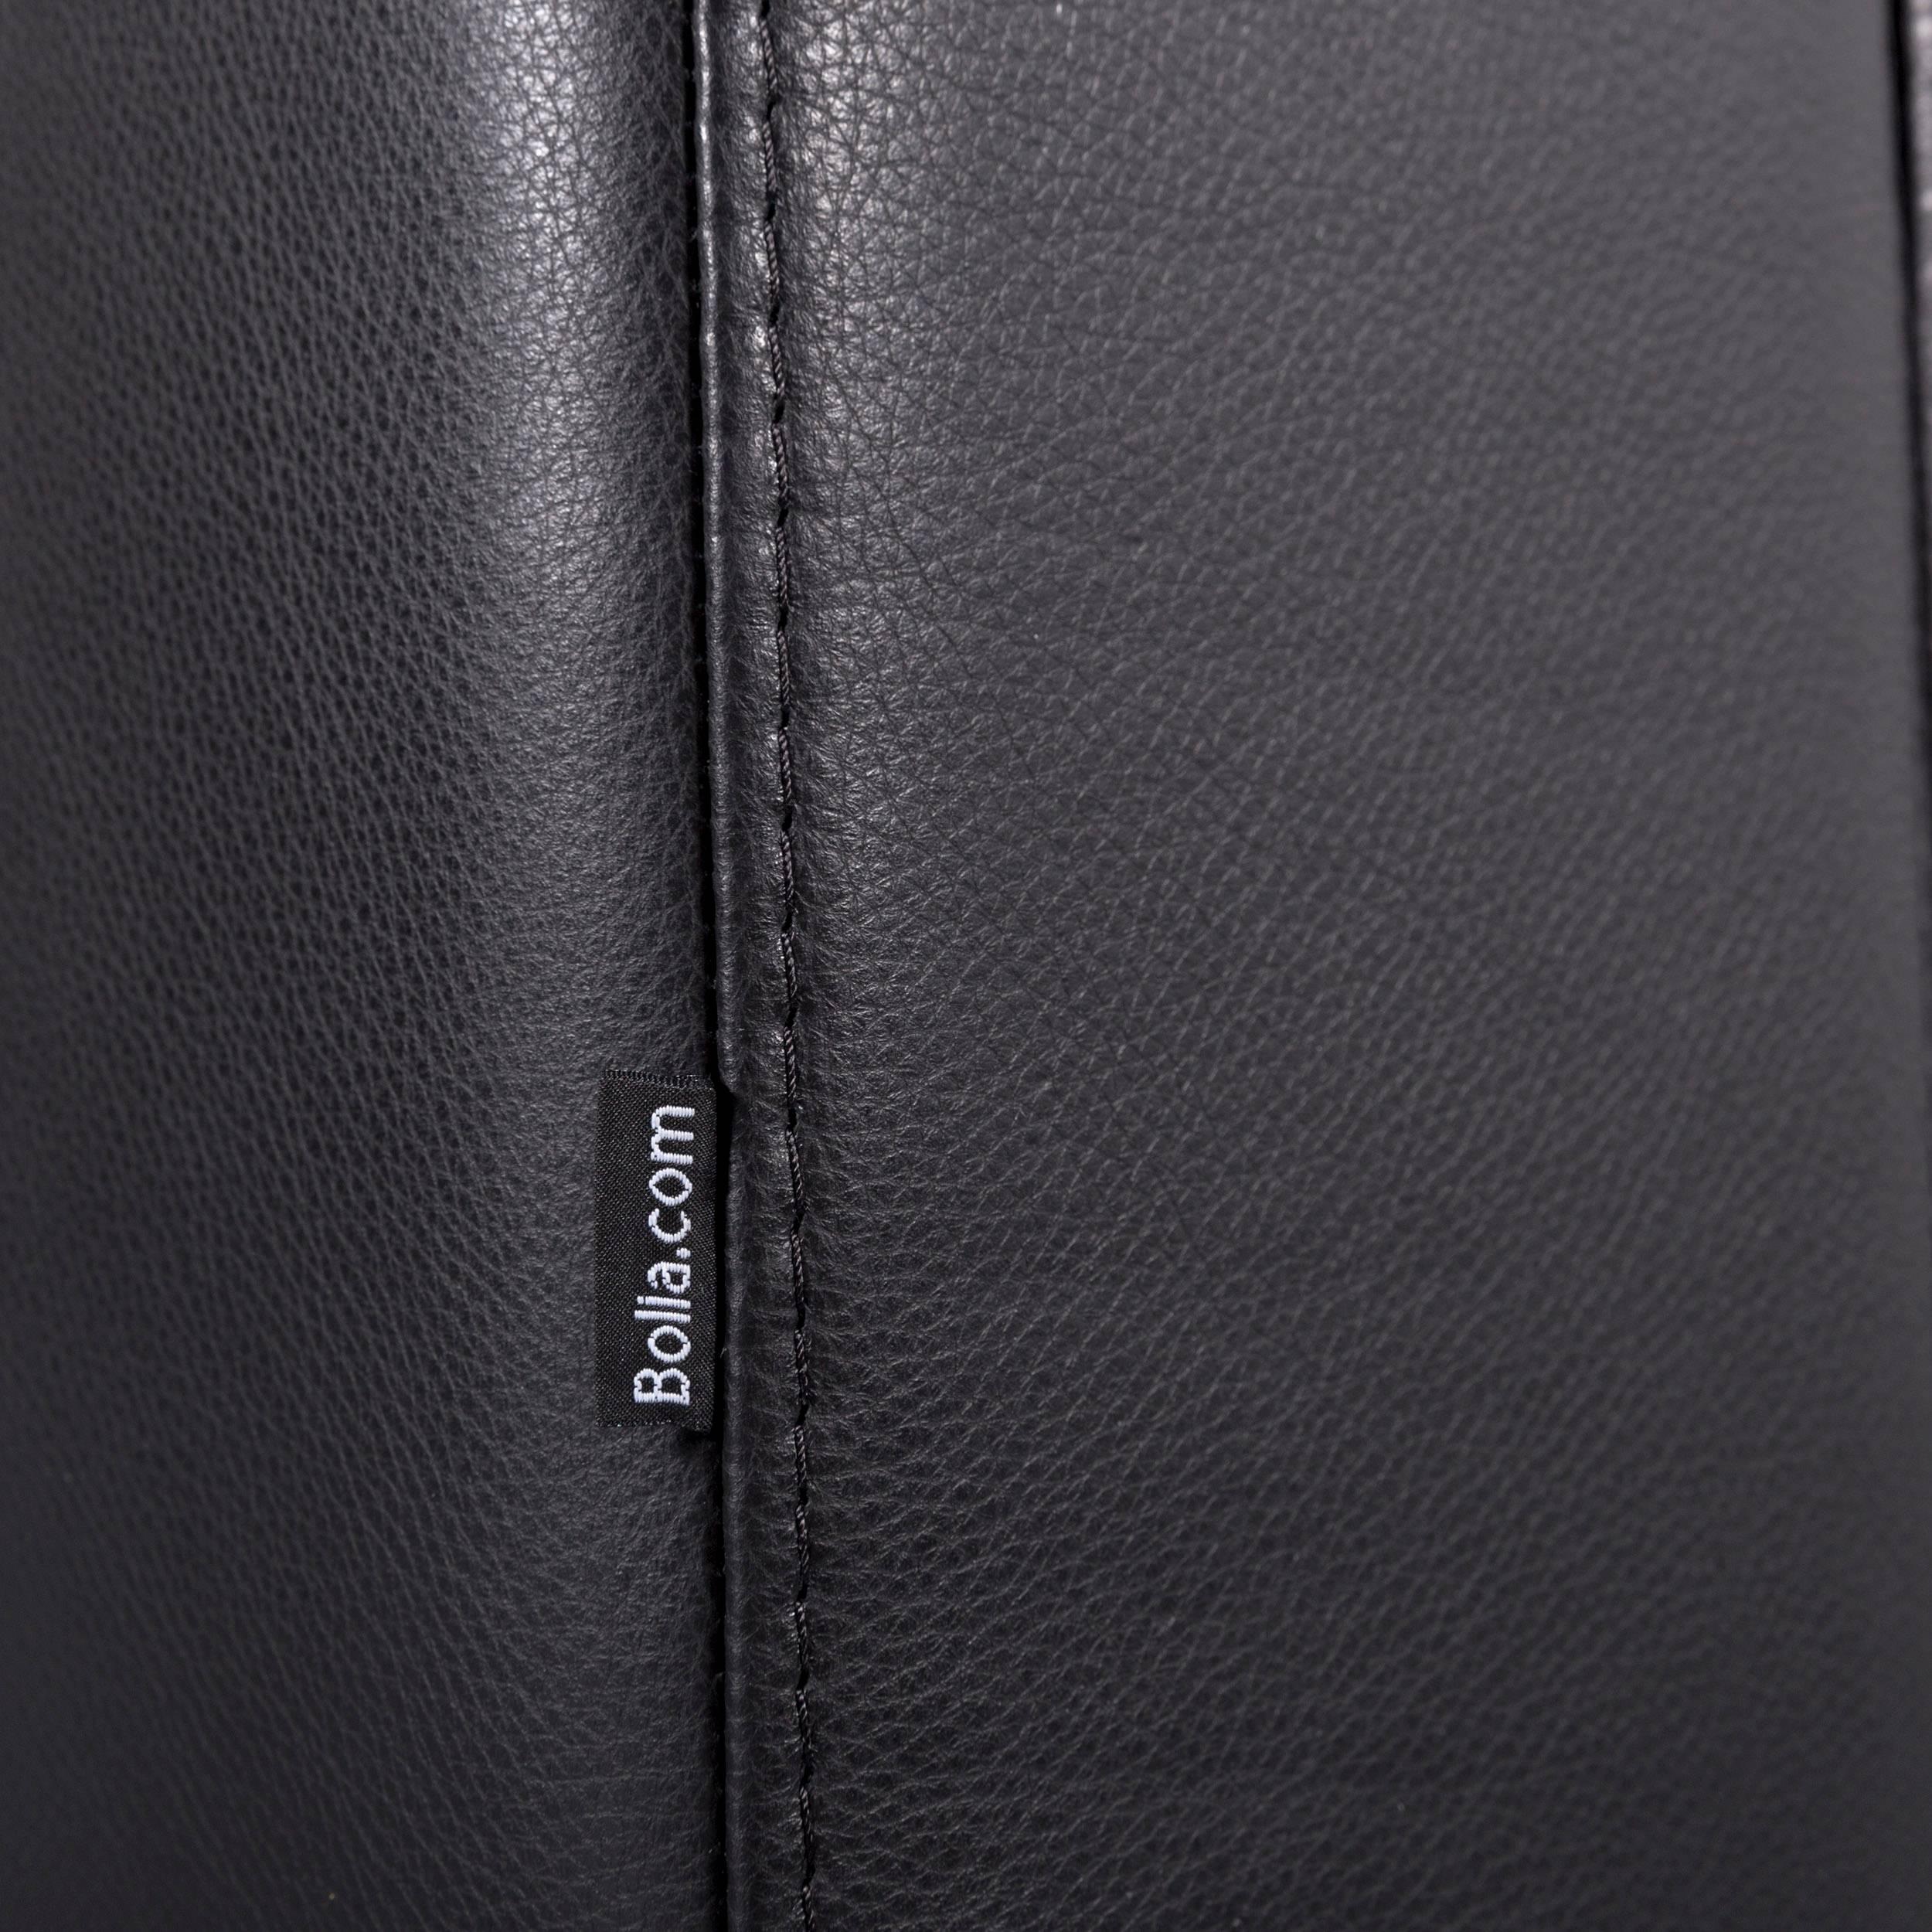 Bolia Leather Corner-Sofa Black Bed-Sofa 3